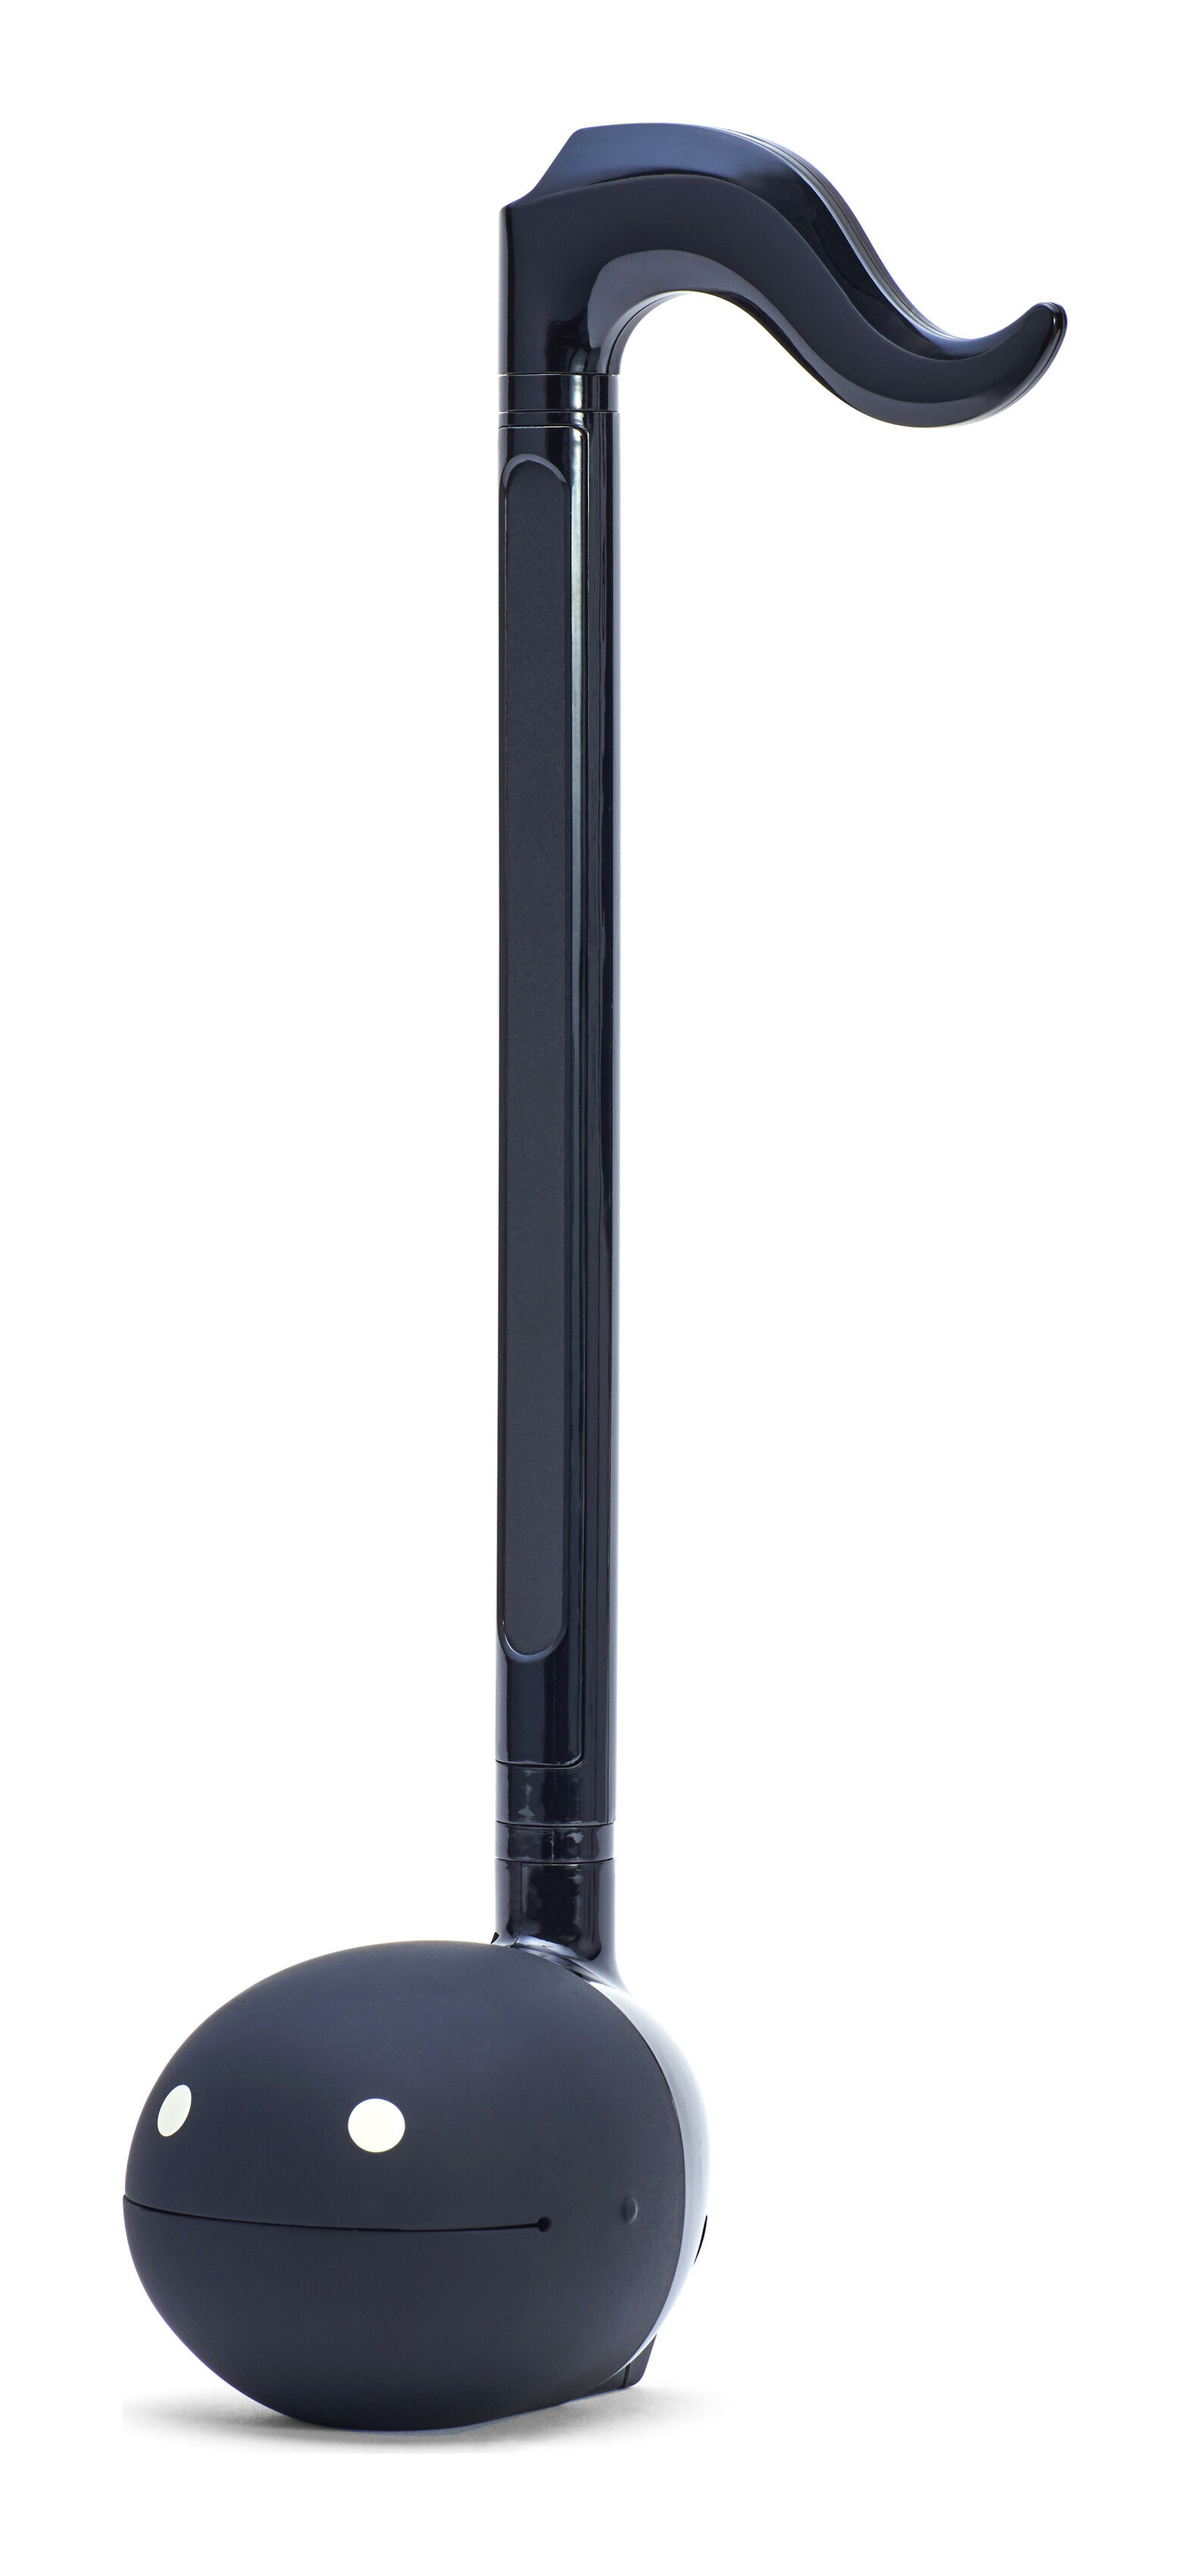 あす楽 明和電機 オタマトーン テクノ 低廉 ブラック TECHNO ランキングTOP10 smtb-TK 送料無料